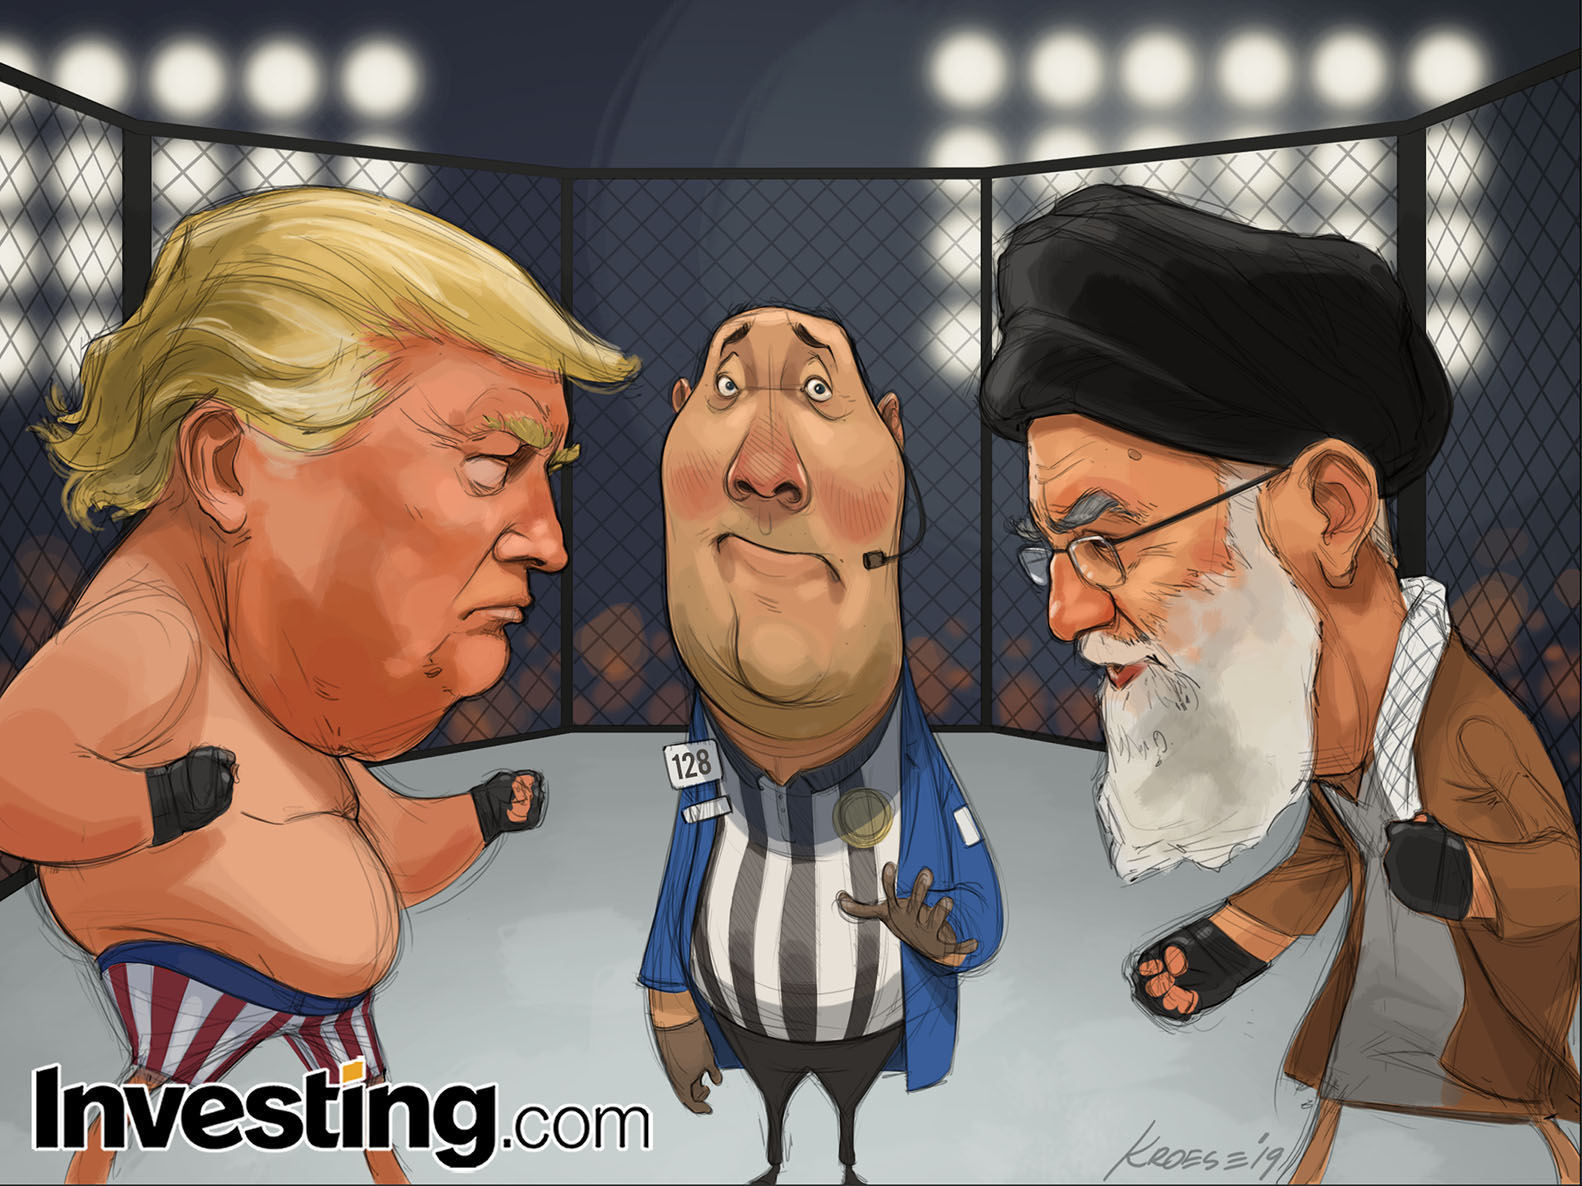 Iran-VS: Markten kijken uit naar de confrontatie in het Midden-Oosten